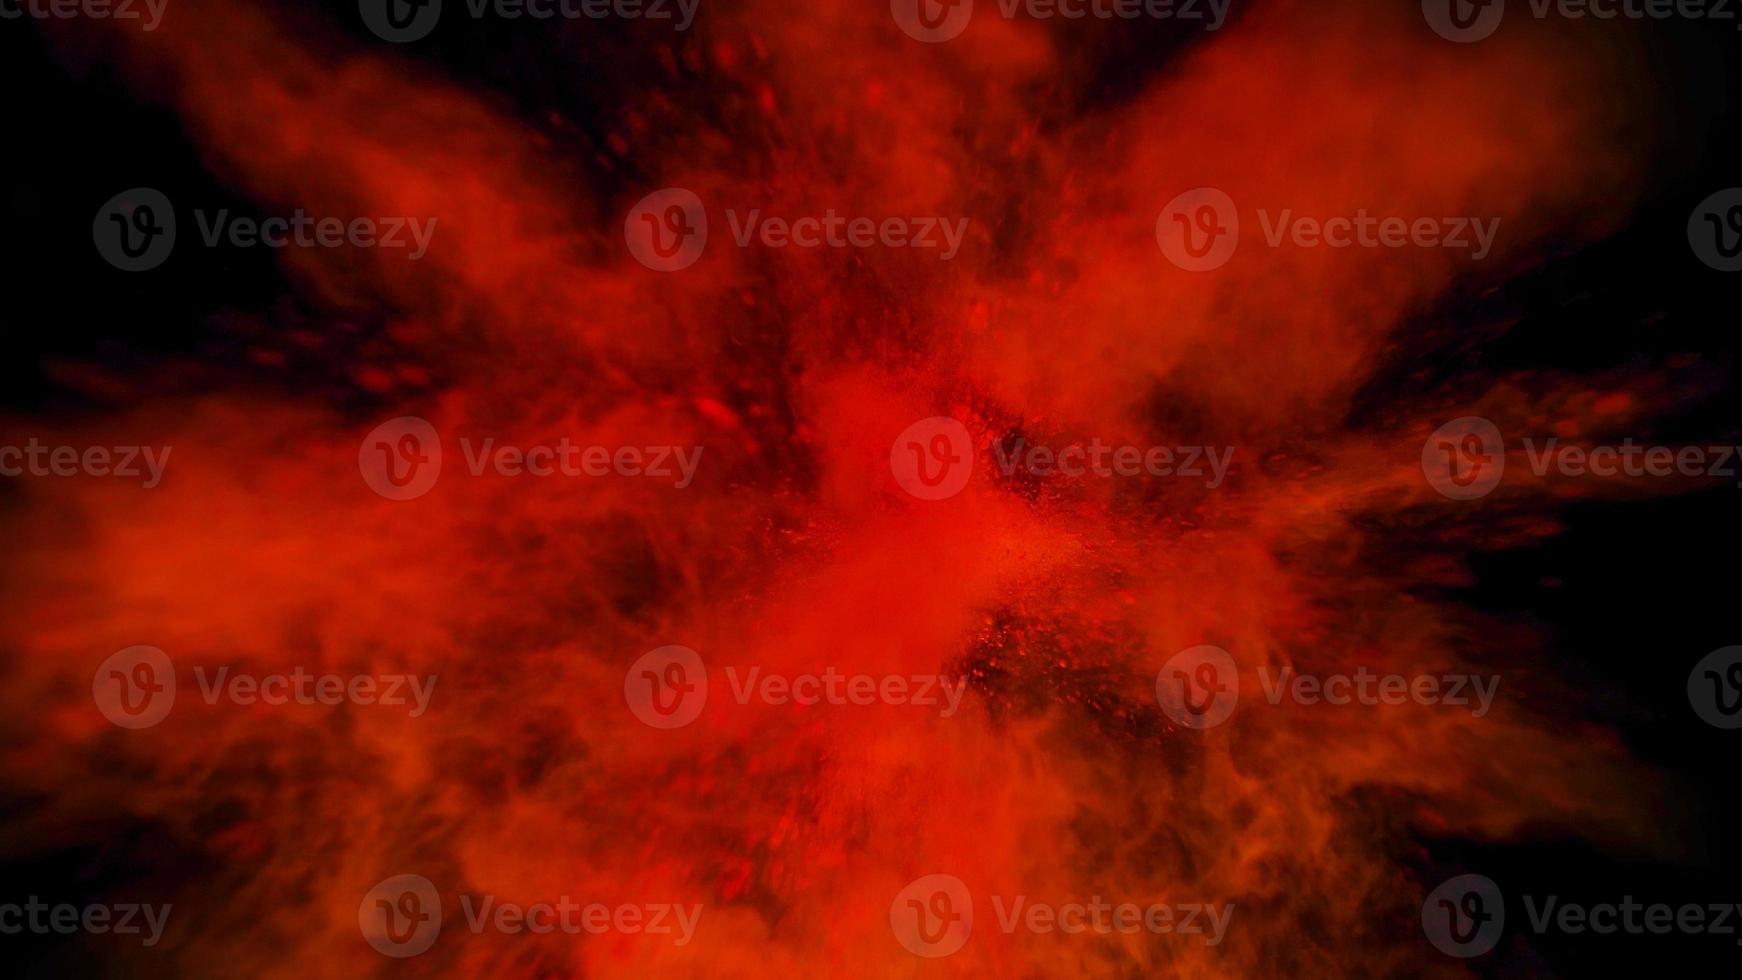 hellrote bunte Pulverexplosion farbiger Wolkenstaub explodiert auf Schwarz foto